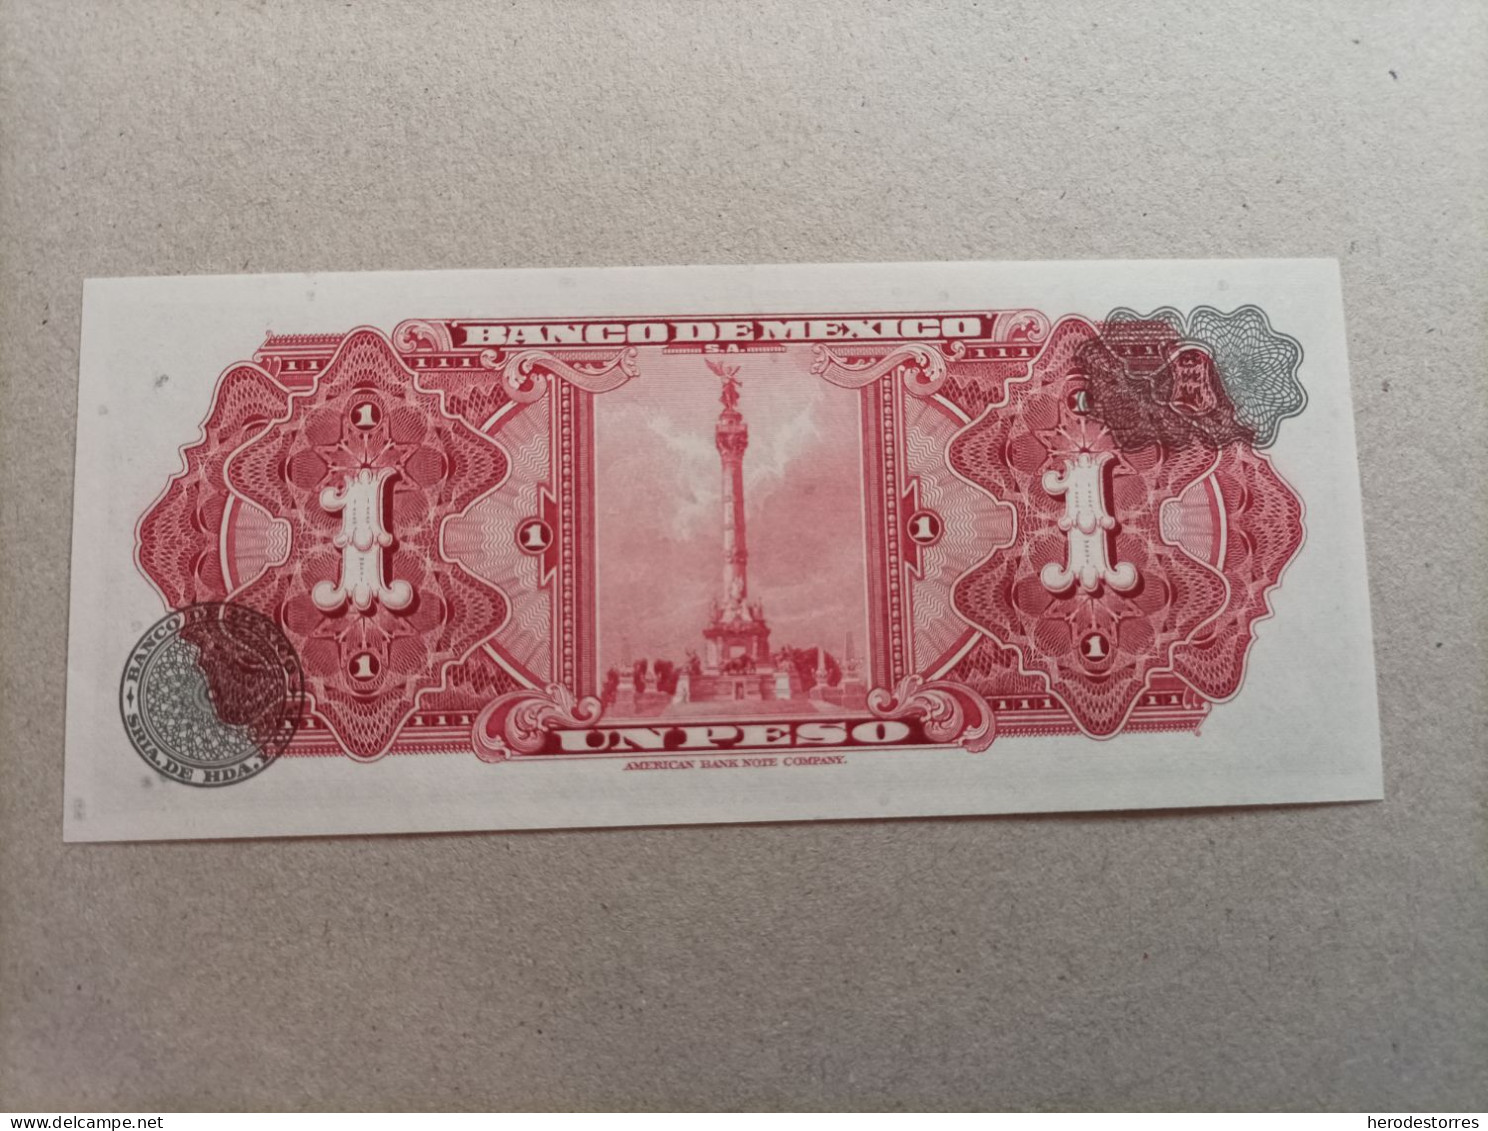 Billete De México 1 Peso Del Año 1969, UNC - Mexico